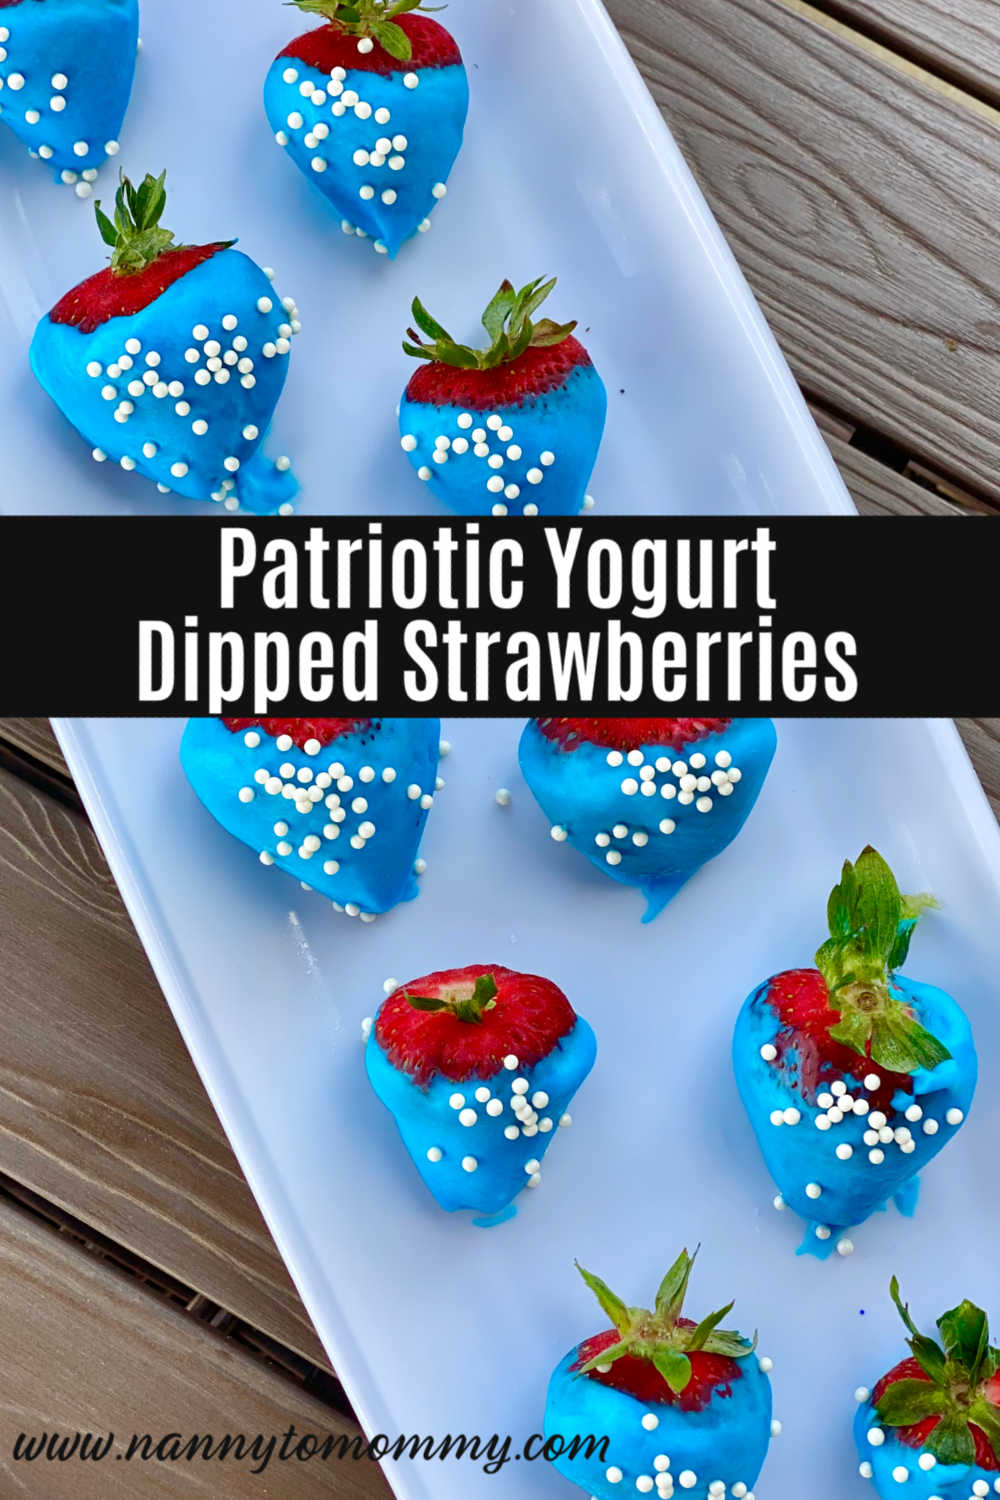 Patriotic Yogurt Dipped Strawberries